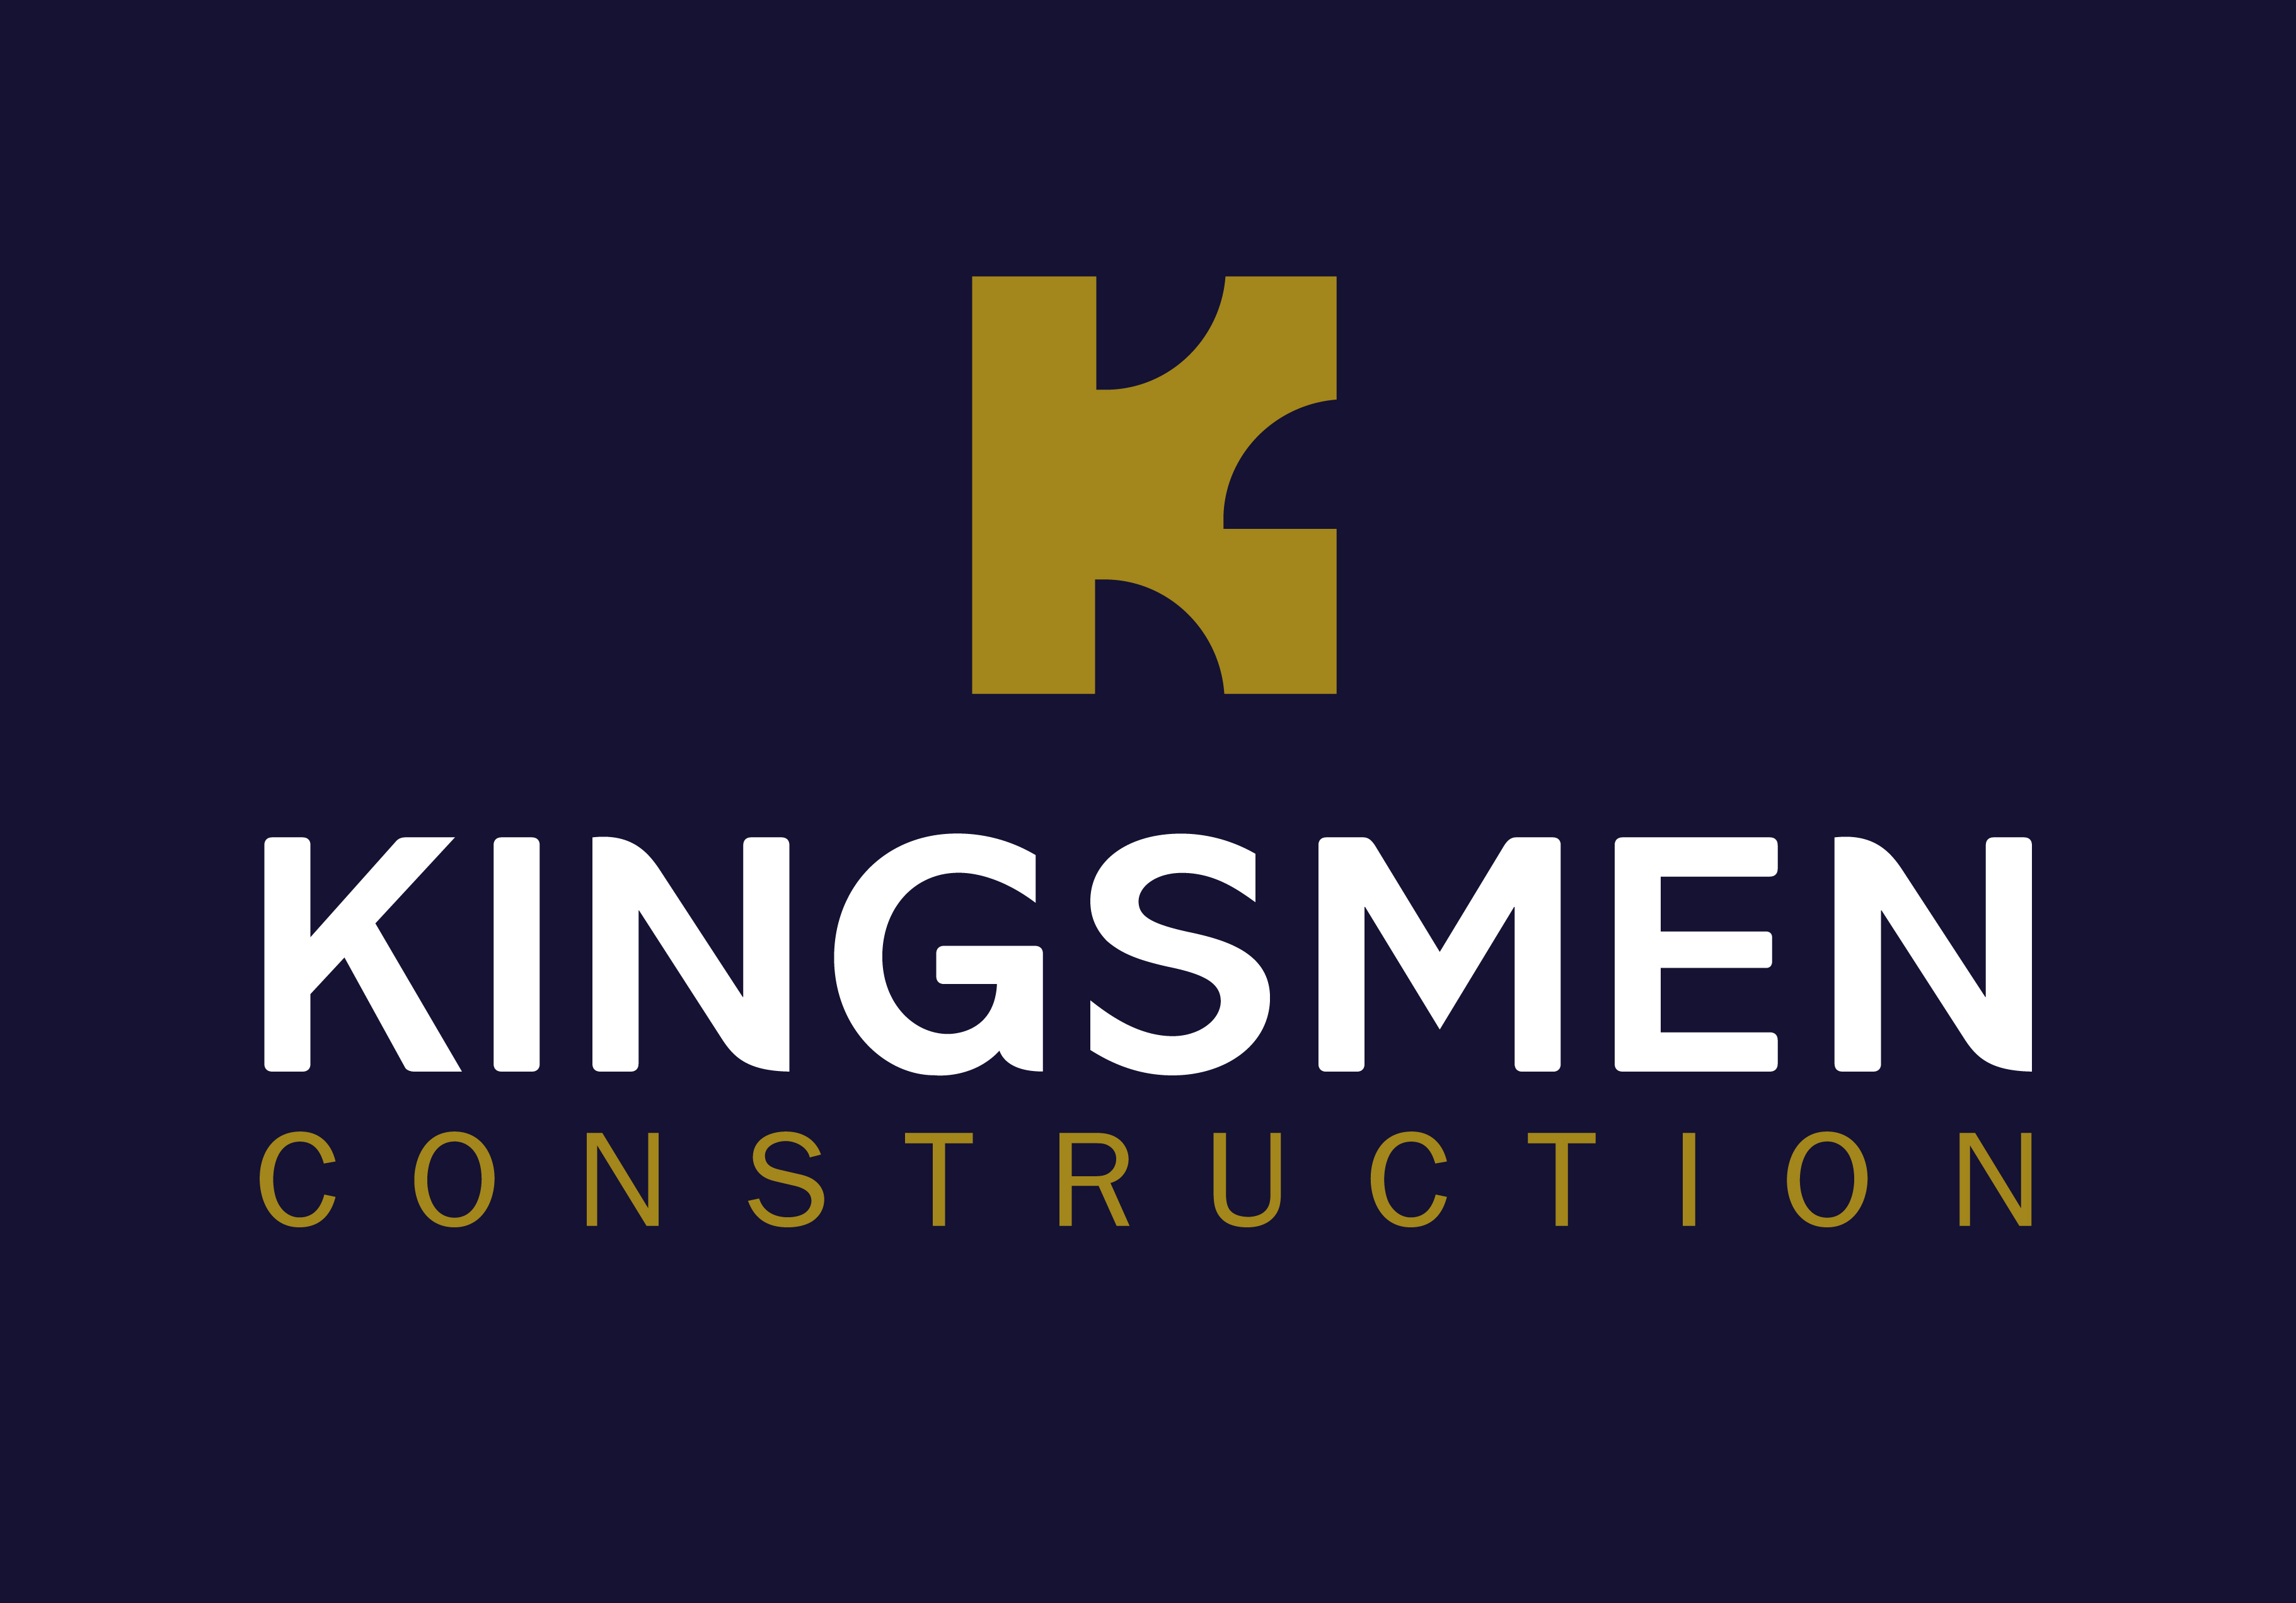 Kingsmen Brand Logo